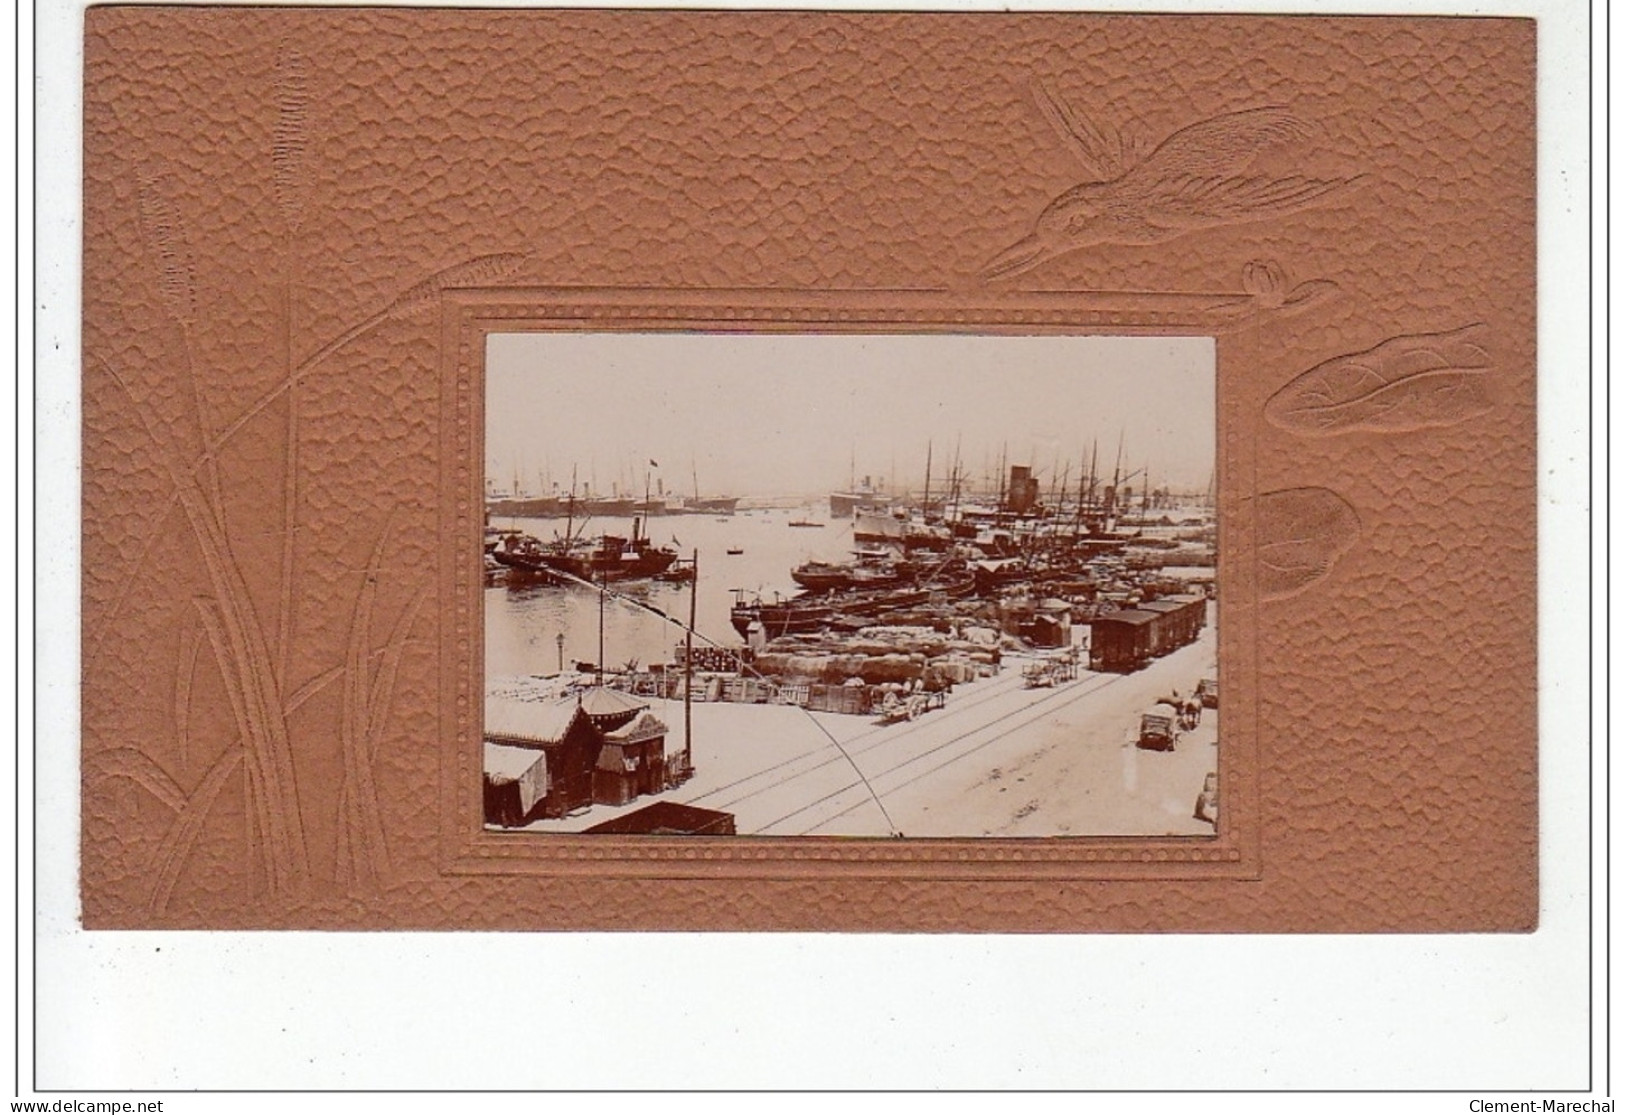 MARSEILLE : série complète de 12 cartes postales photos """"passe partout"""" avec la pochette d'origine - très bon état